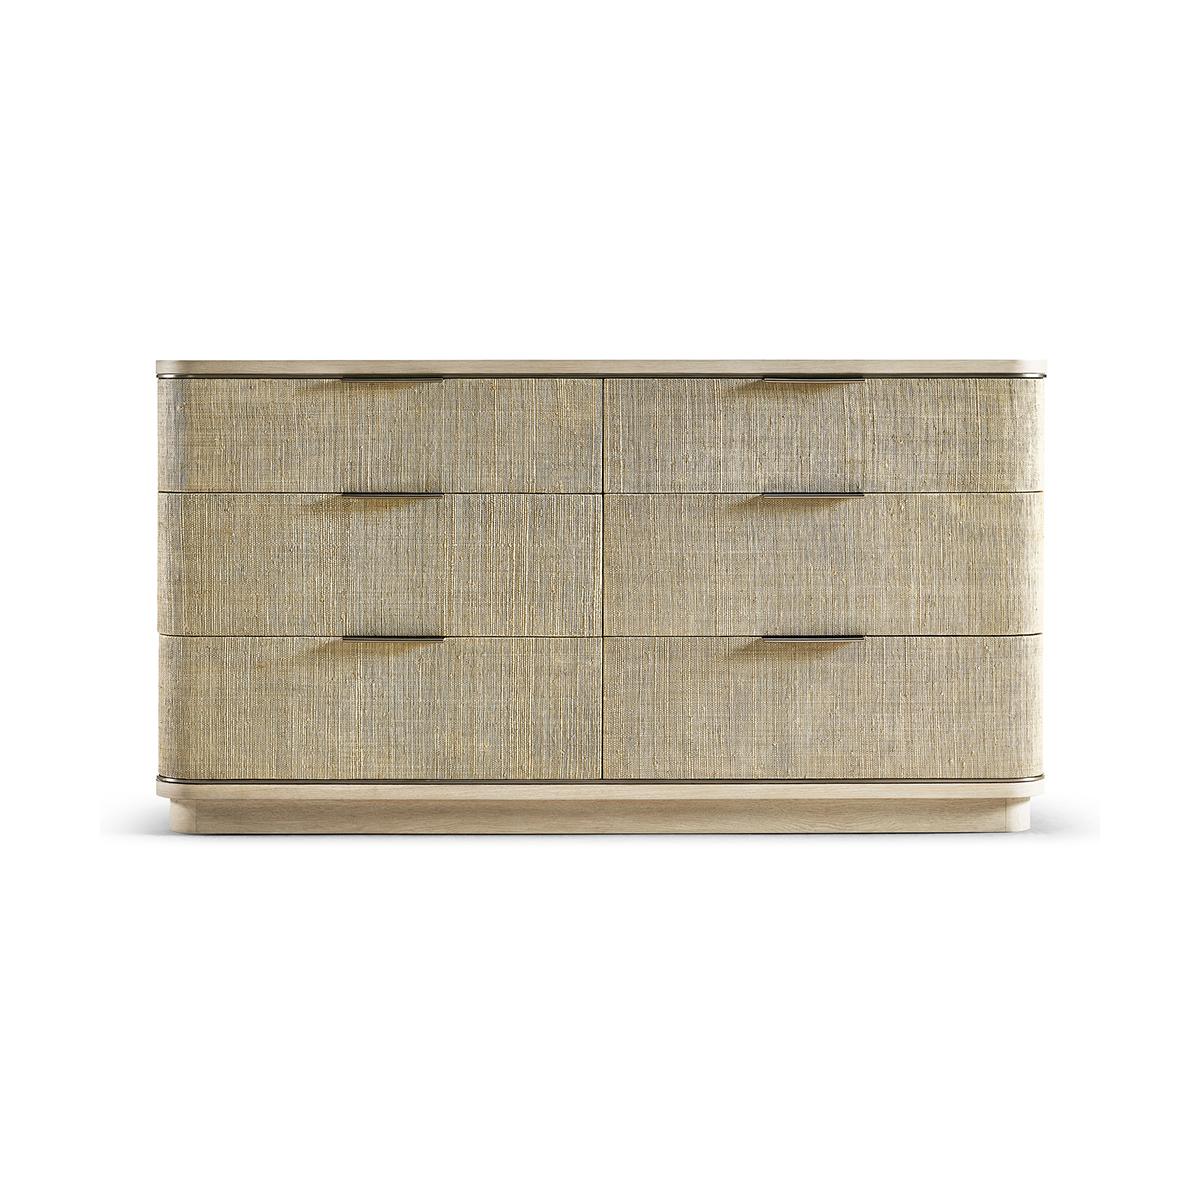 Modern Woven Double Dresser, ein wunderschönes Stück, das mit Leidenschaft gefertigt wurde und unglaubliche ästhetische Details aufweist, die Ihnen den Atem rauben werden.

Die sechs Schubladen der Kommode aus gebleichtem Eichenholz sind mit